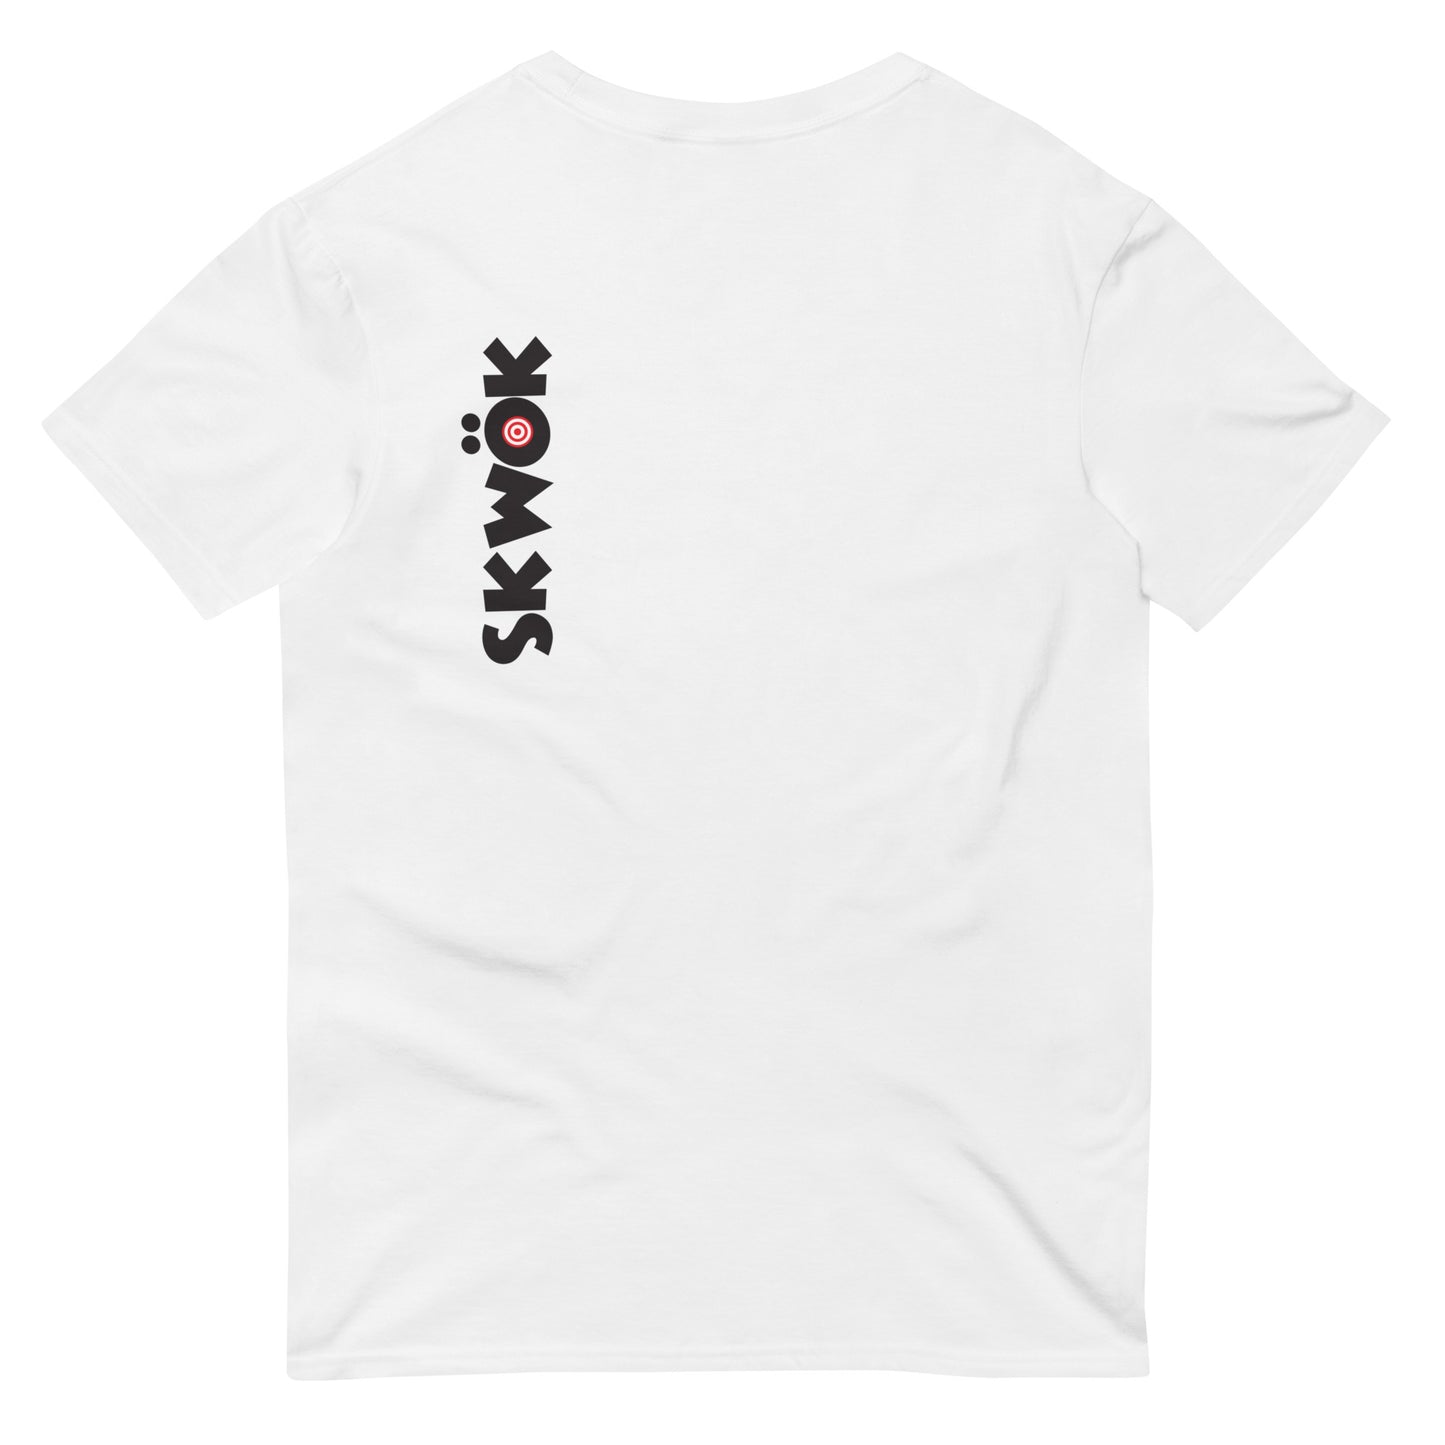 Skwok Brand / T-shirt / Target Logo